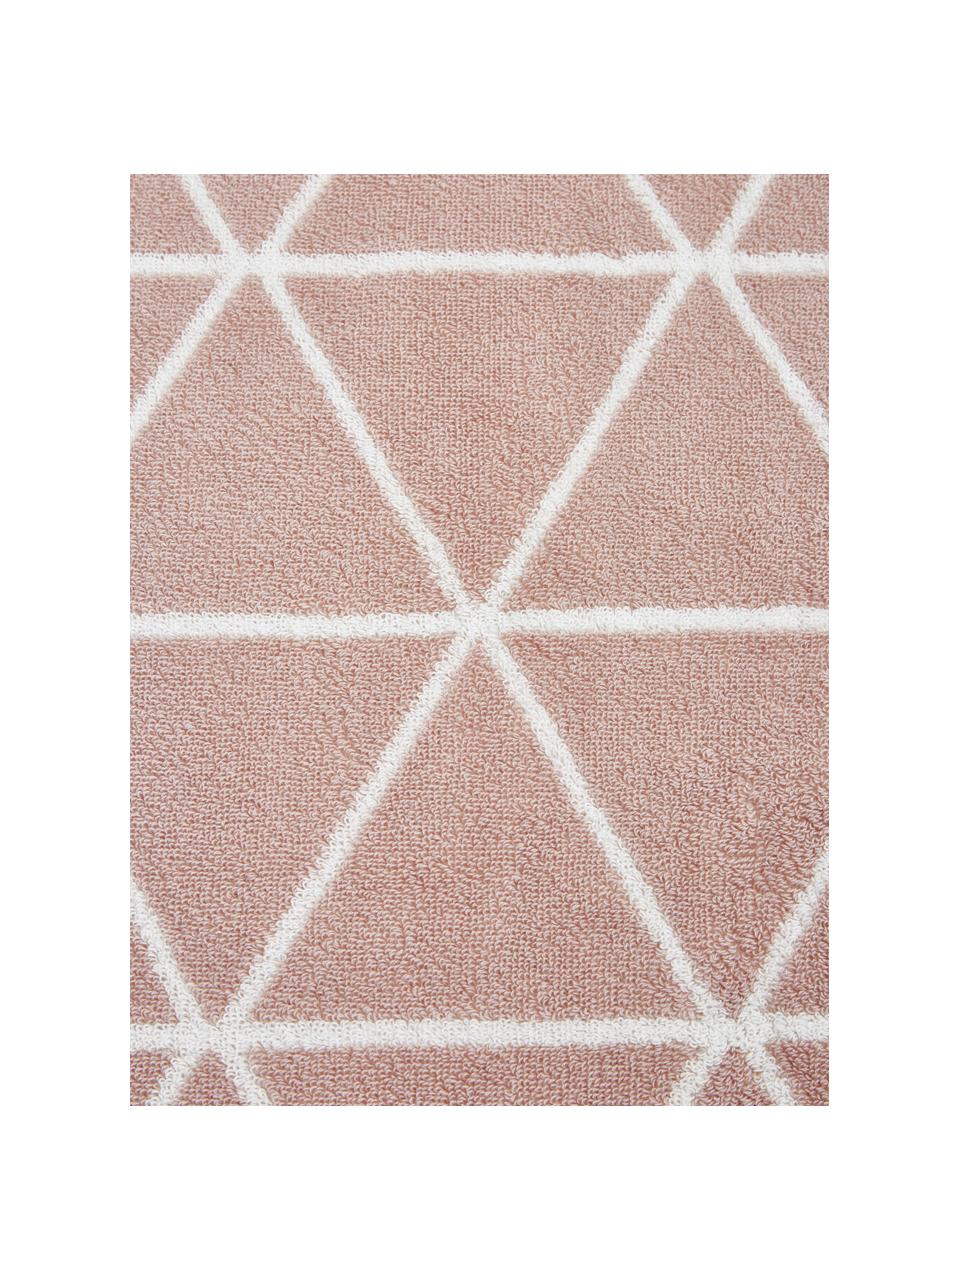 Dubbelzijdige handdoekenset Elina met grafisch patroon, 3-delig, Roze, crèmewit, Set met verschillende formaten